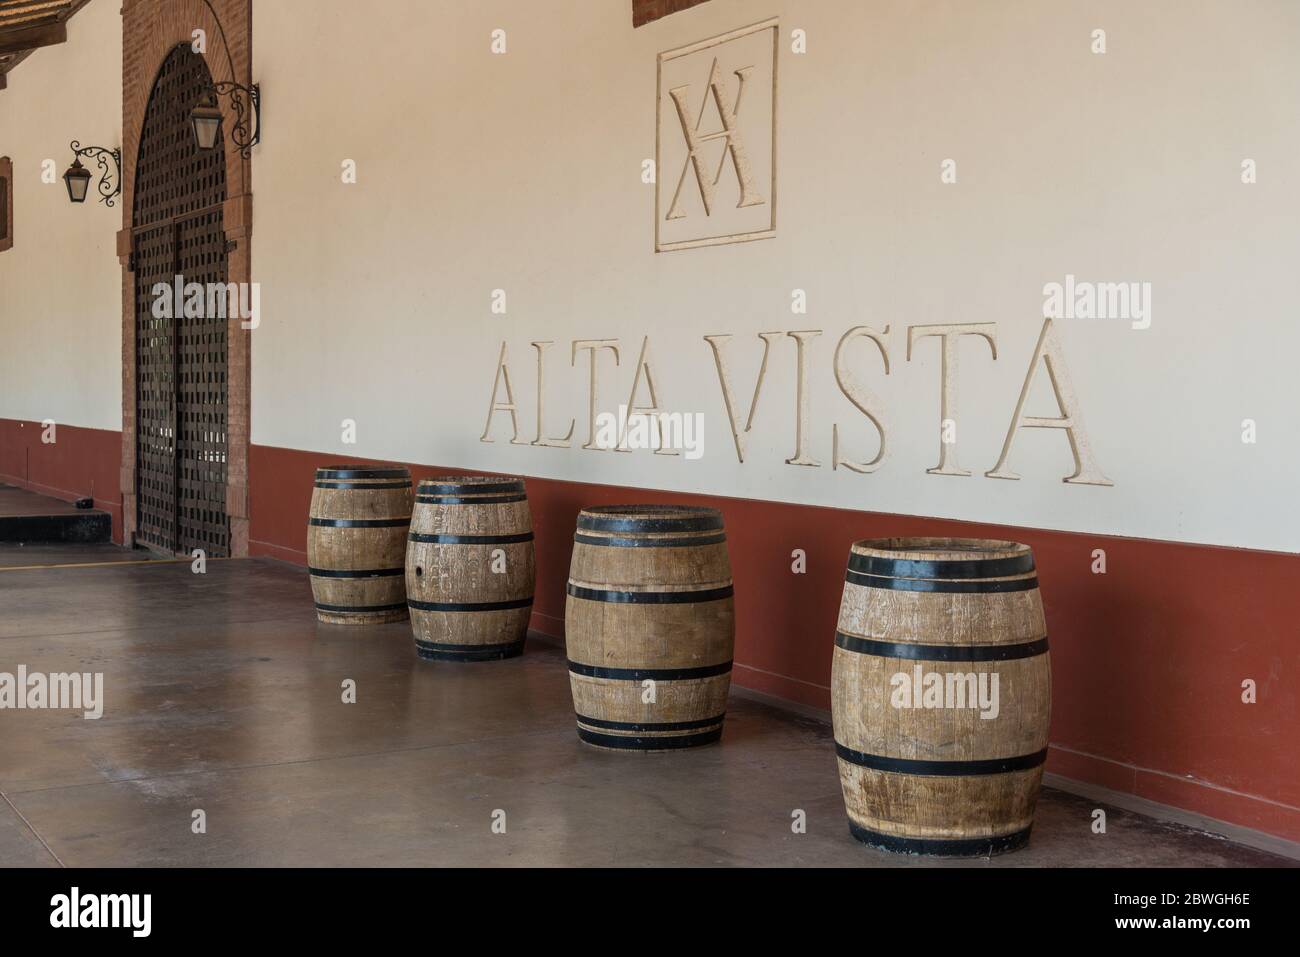 Mendoza, Argentina - January 24, 2019: Wine barrels at Alta Vista winery Stock Photo